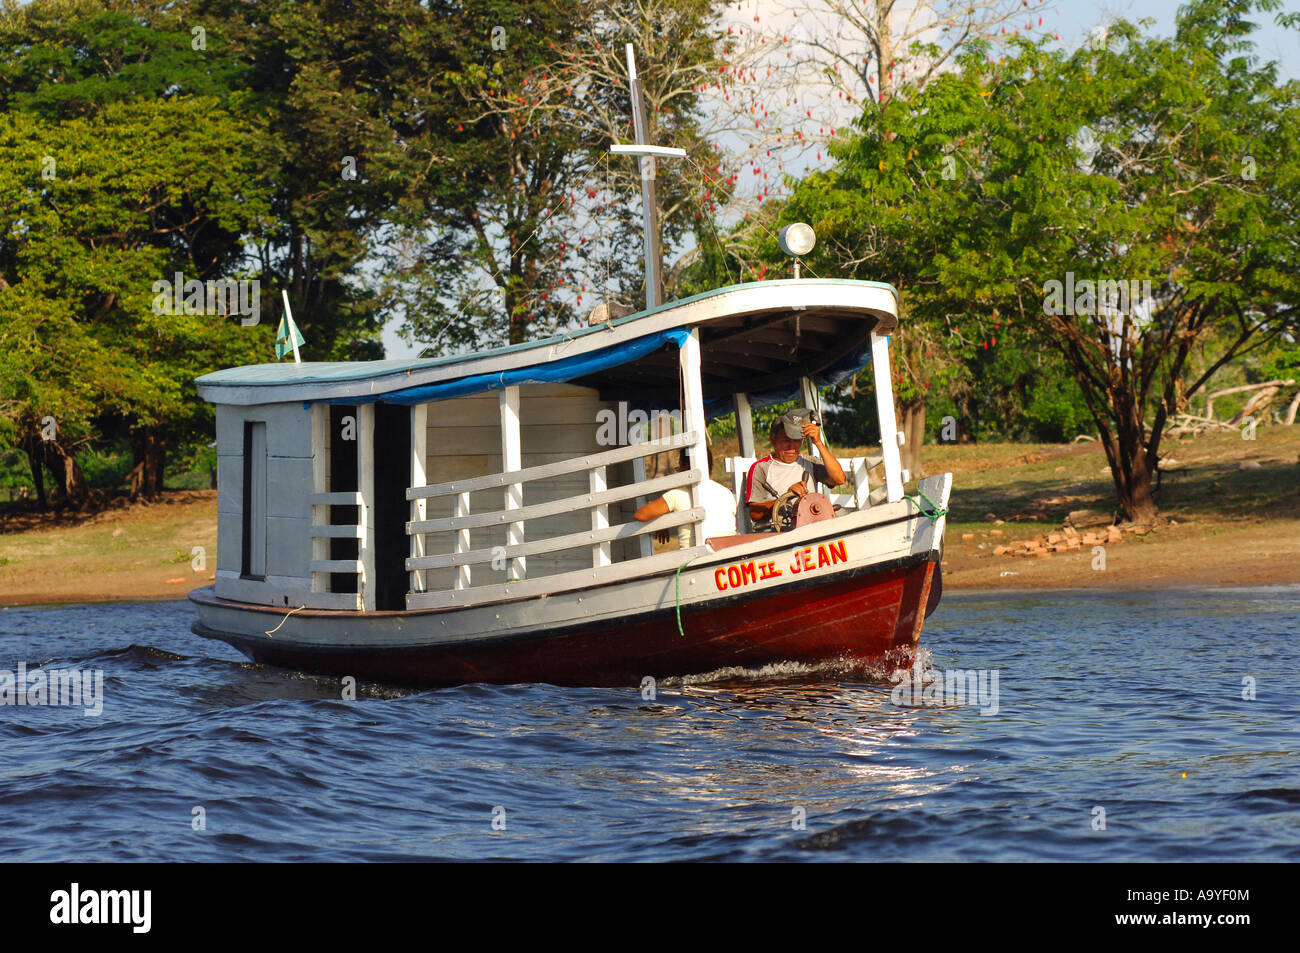 Paquet boat on the Rio Negro river, Amazon river bassin, Brazil Stock Photo